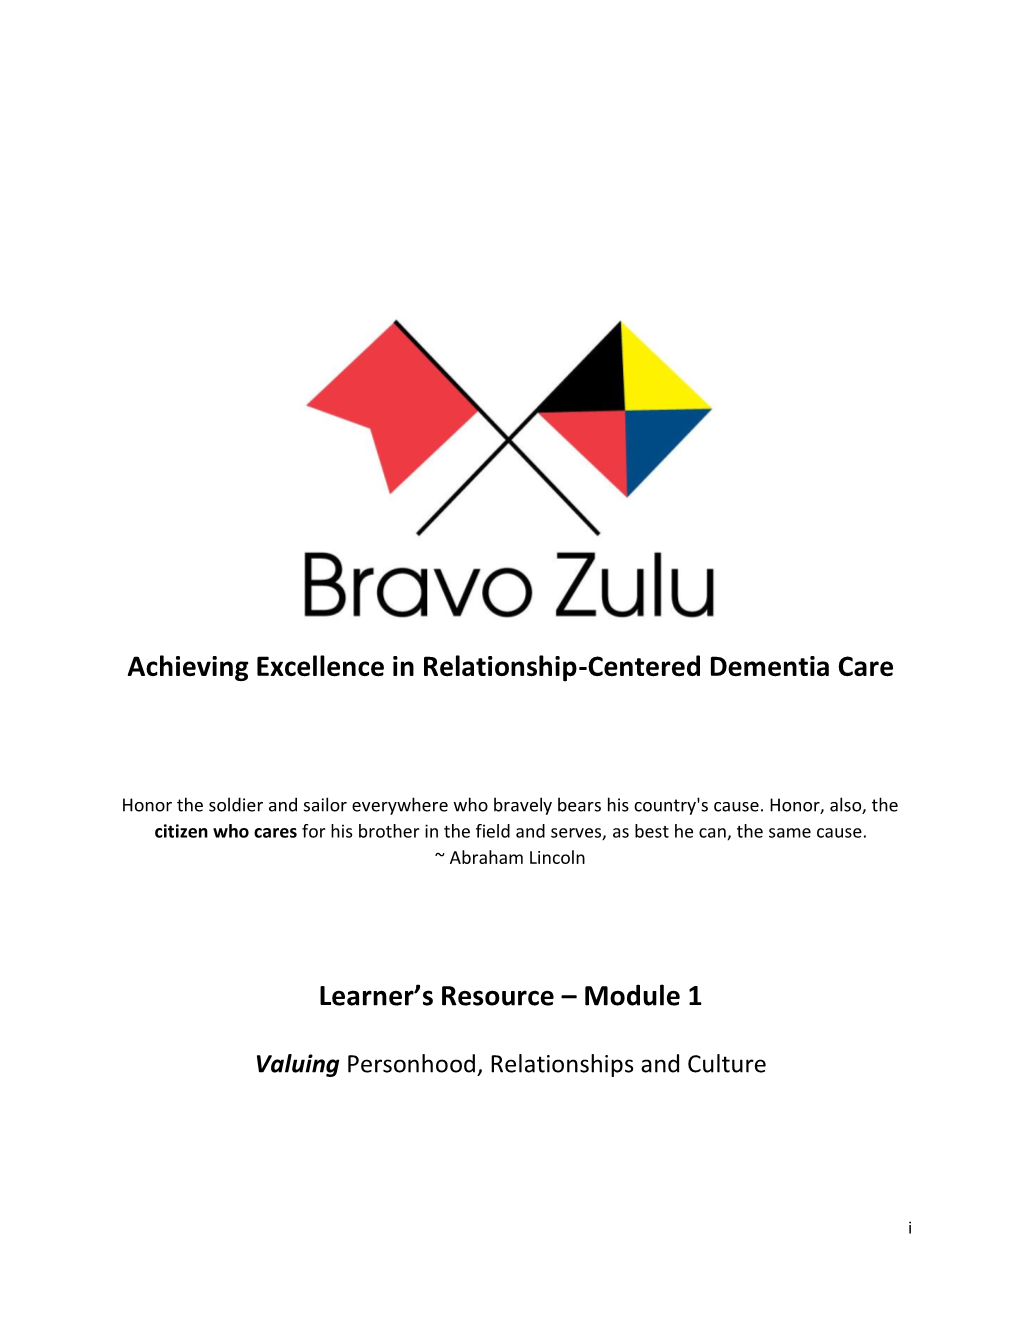 Bravo Zulu Achieveing Excellence in Relationship-Centered Dementia